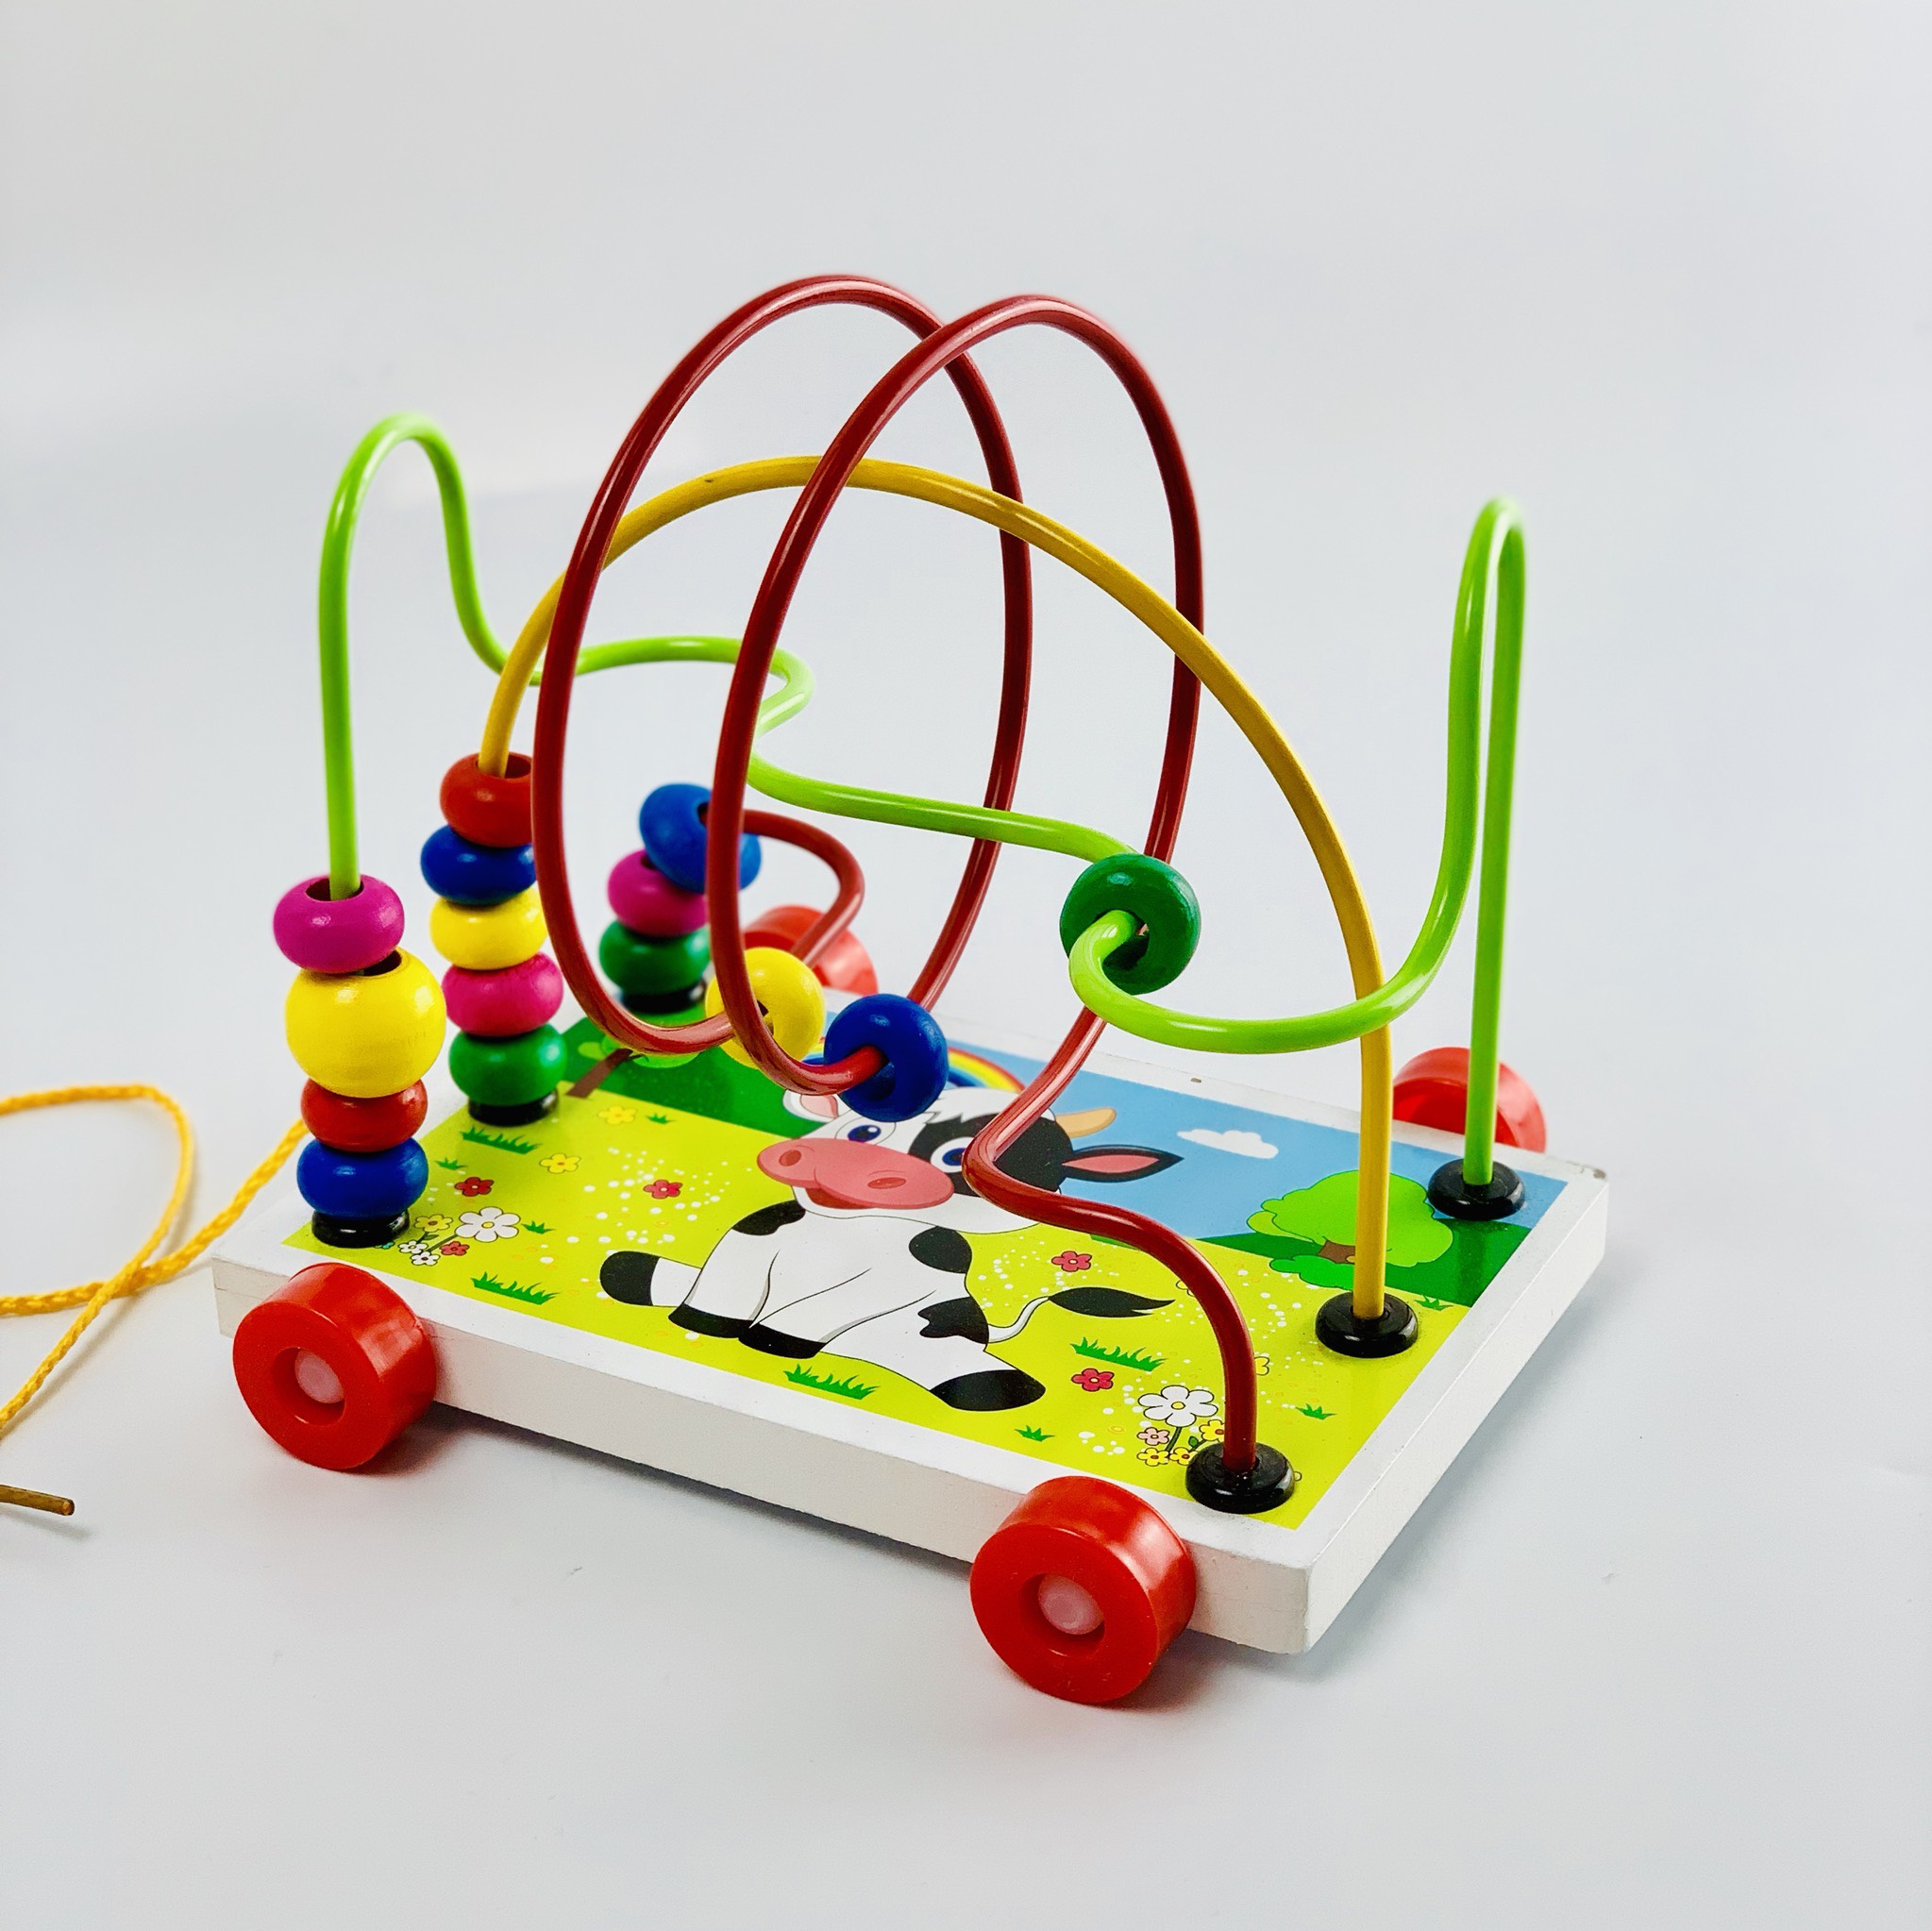 Đồ chơi xe gỗ, game xâu chuỗi luồn hạt gỗ, đồ chơi gỗ xâu chuỗi hạt rèn kỹ năng khéo léo cho bé giúp trẻ kích thích giác quan một cách toàn diện